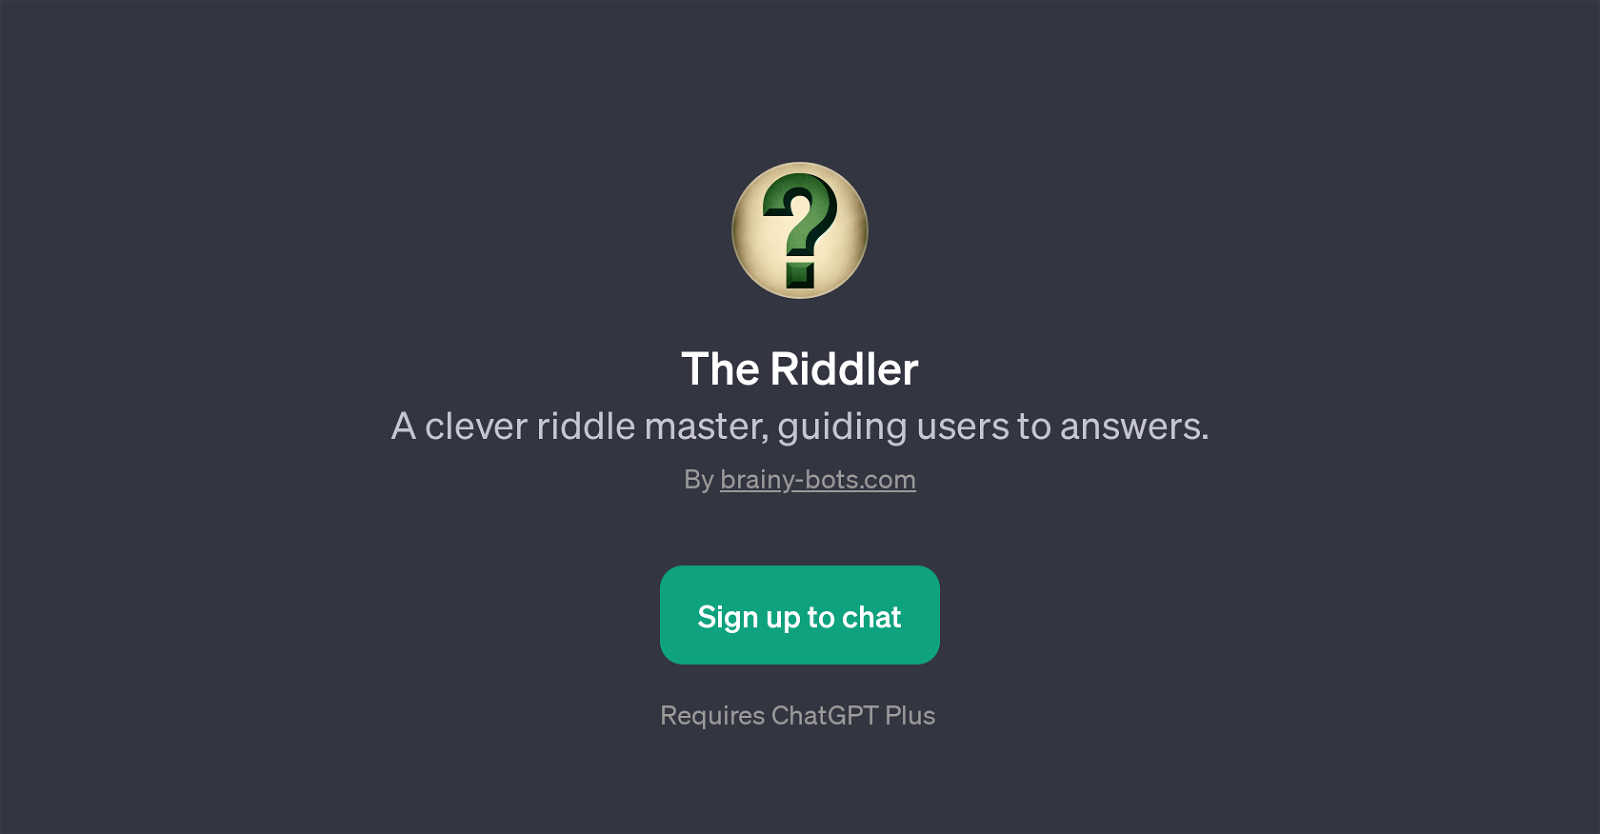 The Riddler website